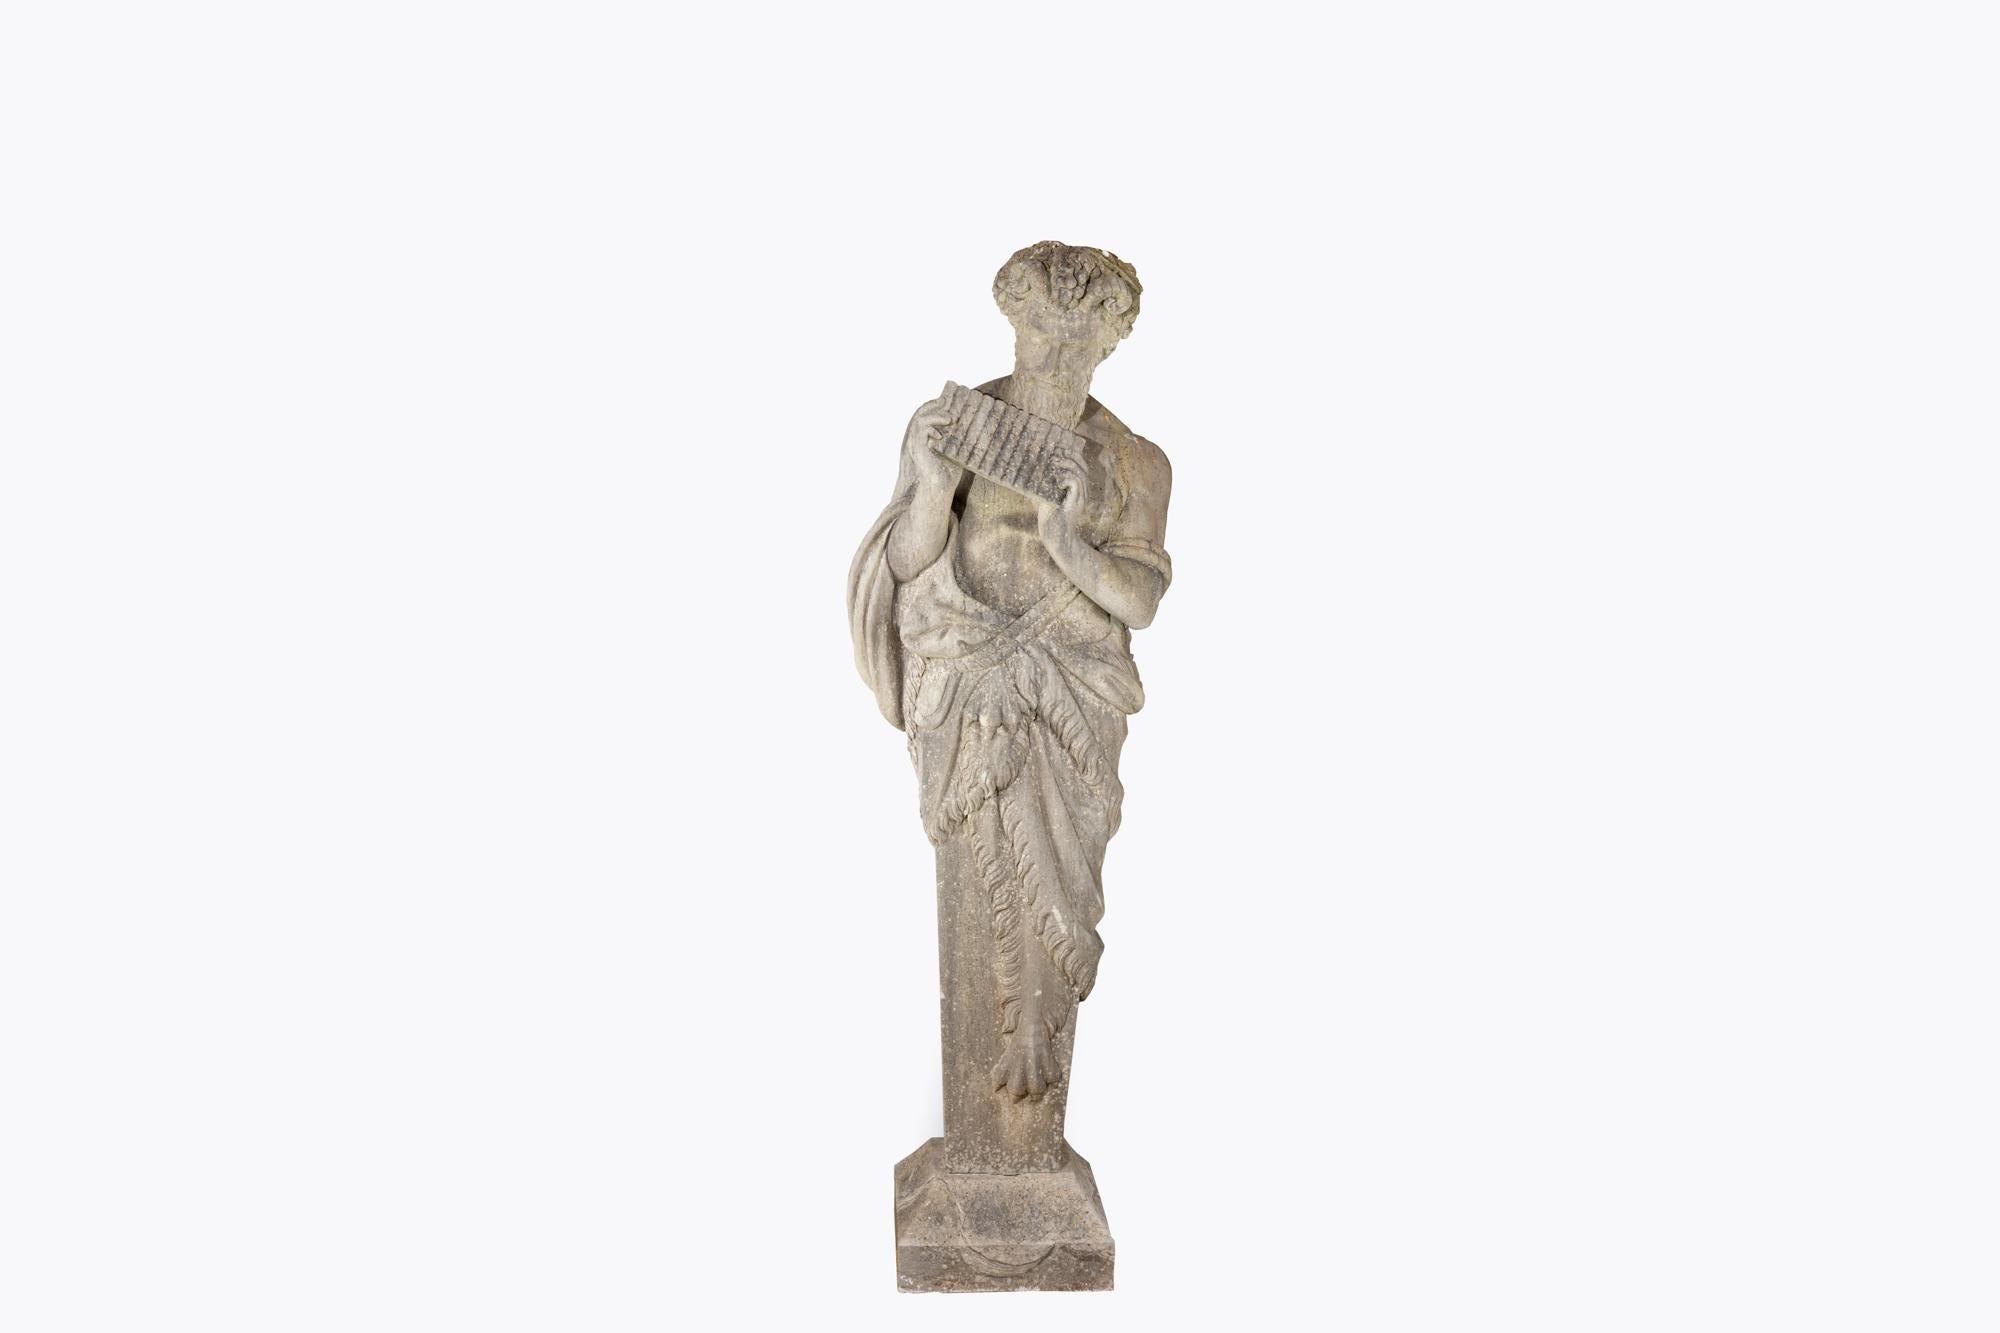 sculpture mythological figure